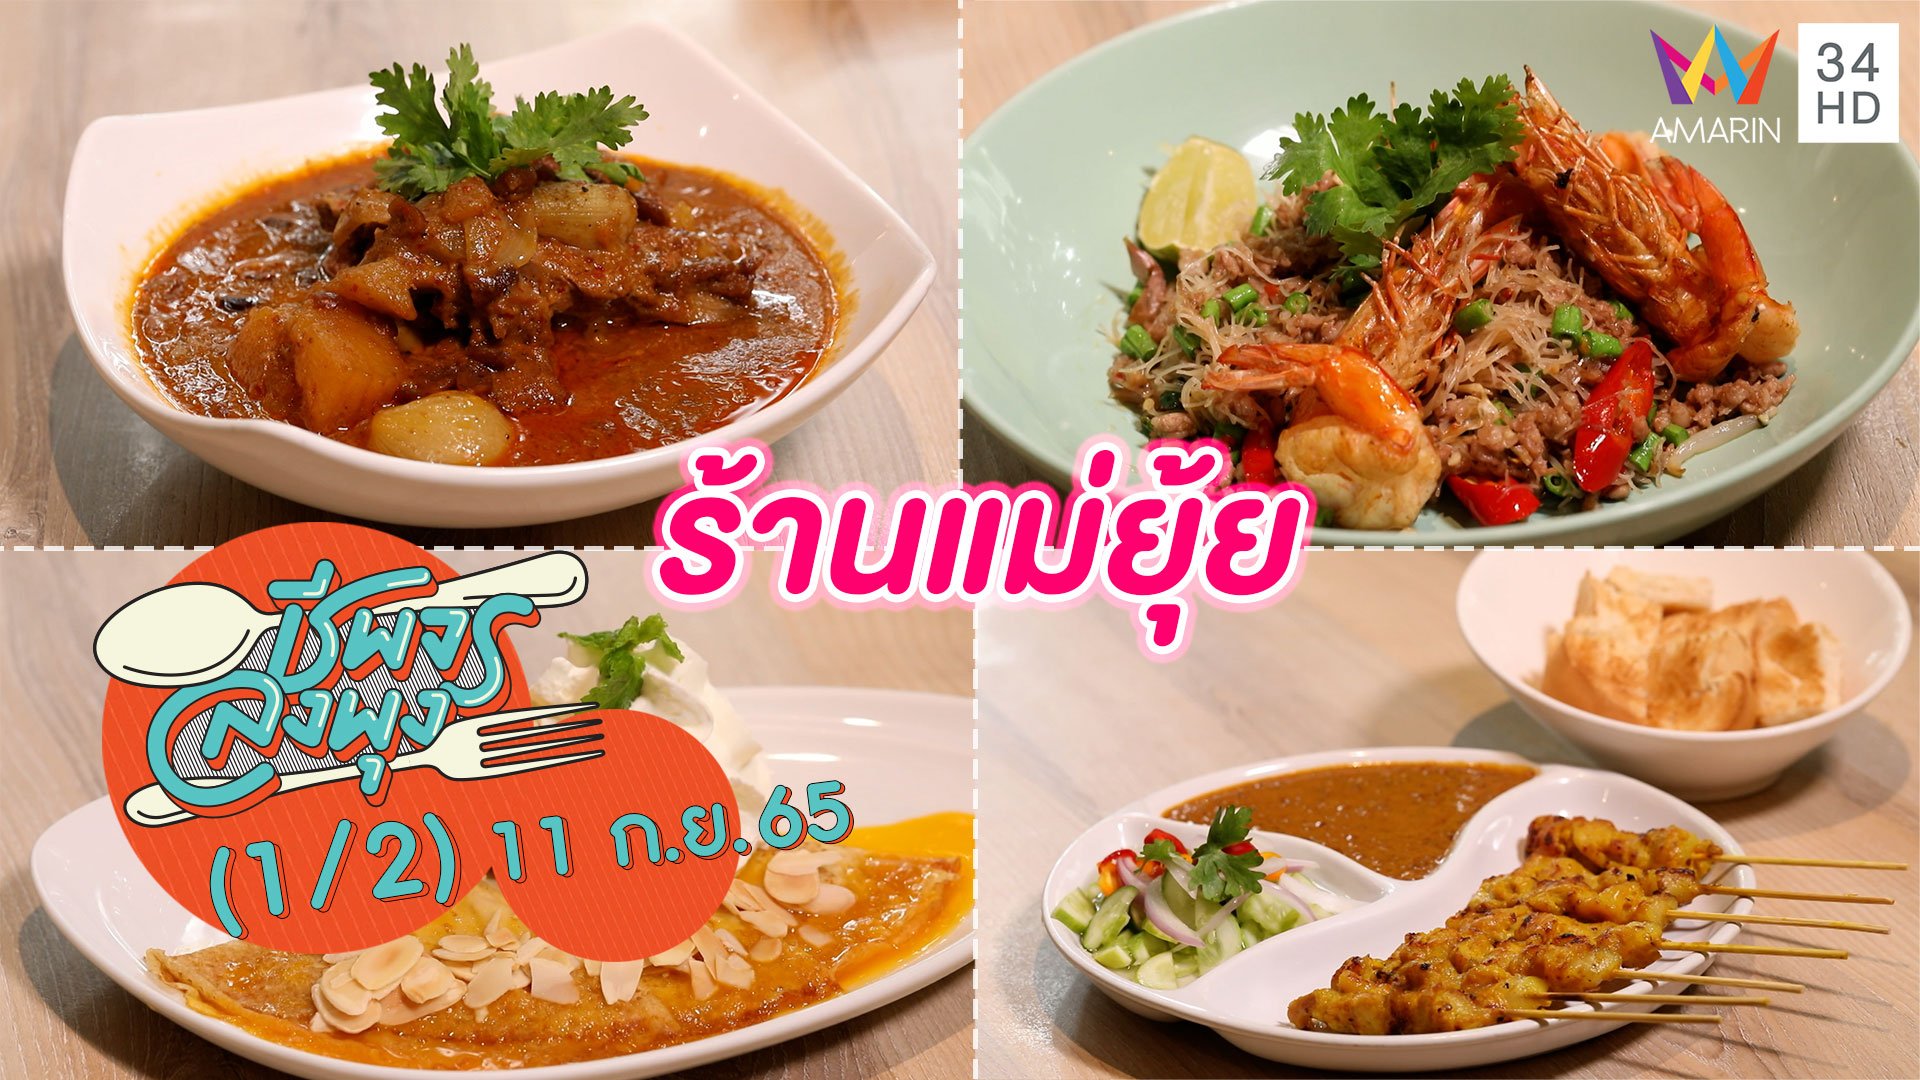 อาหารไทยโบราณ รสชาติทานง่าย @ ร้านแม่ยุ้ย | ชีพจรลงพุง | 11 ก.ย. 65 (1/2) | AMARIN TVHD34